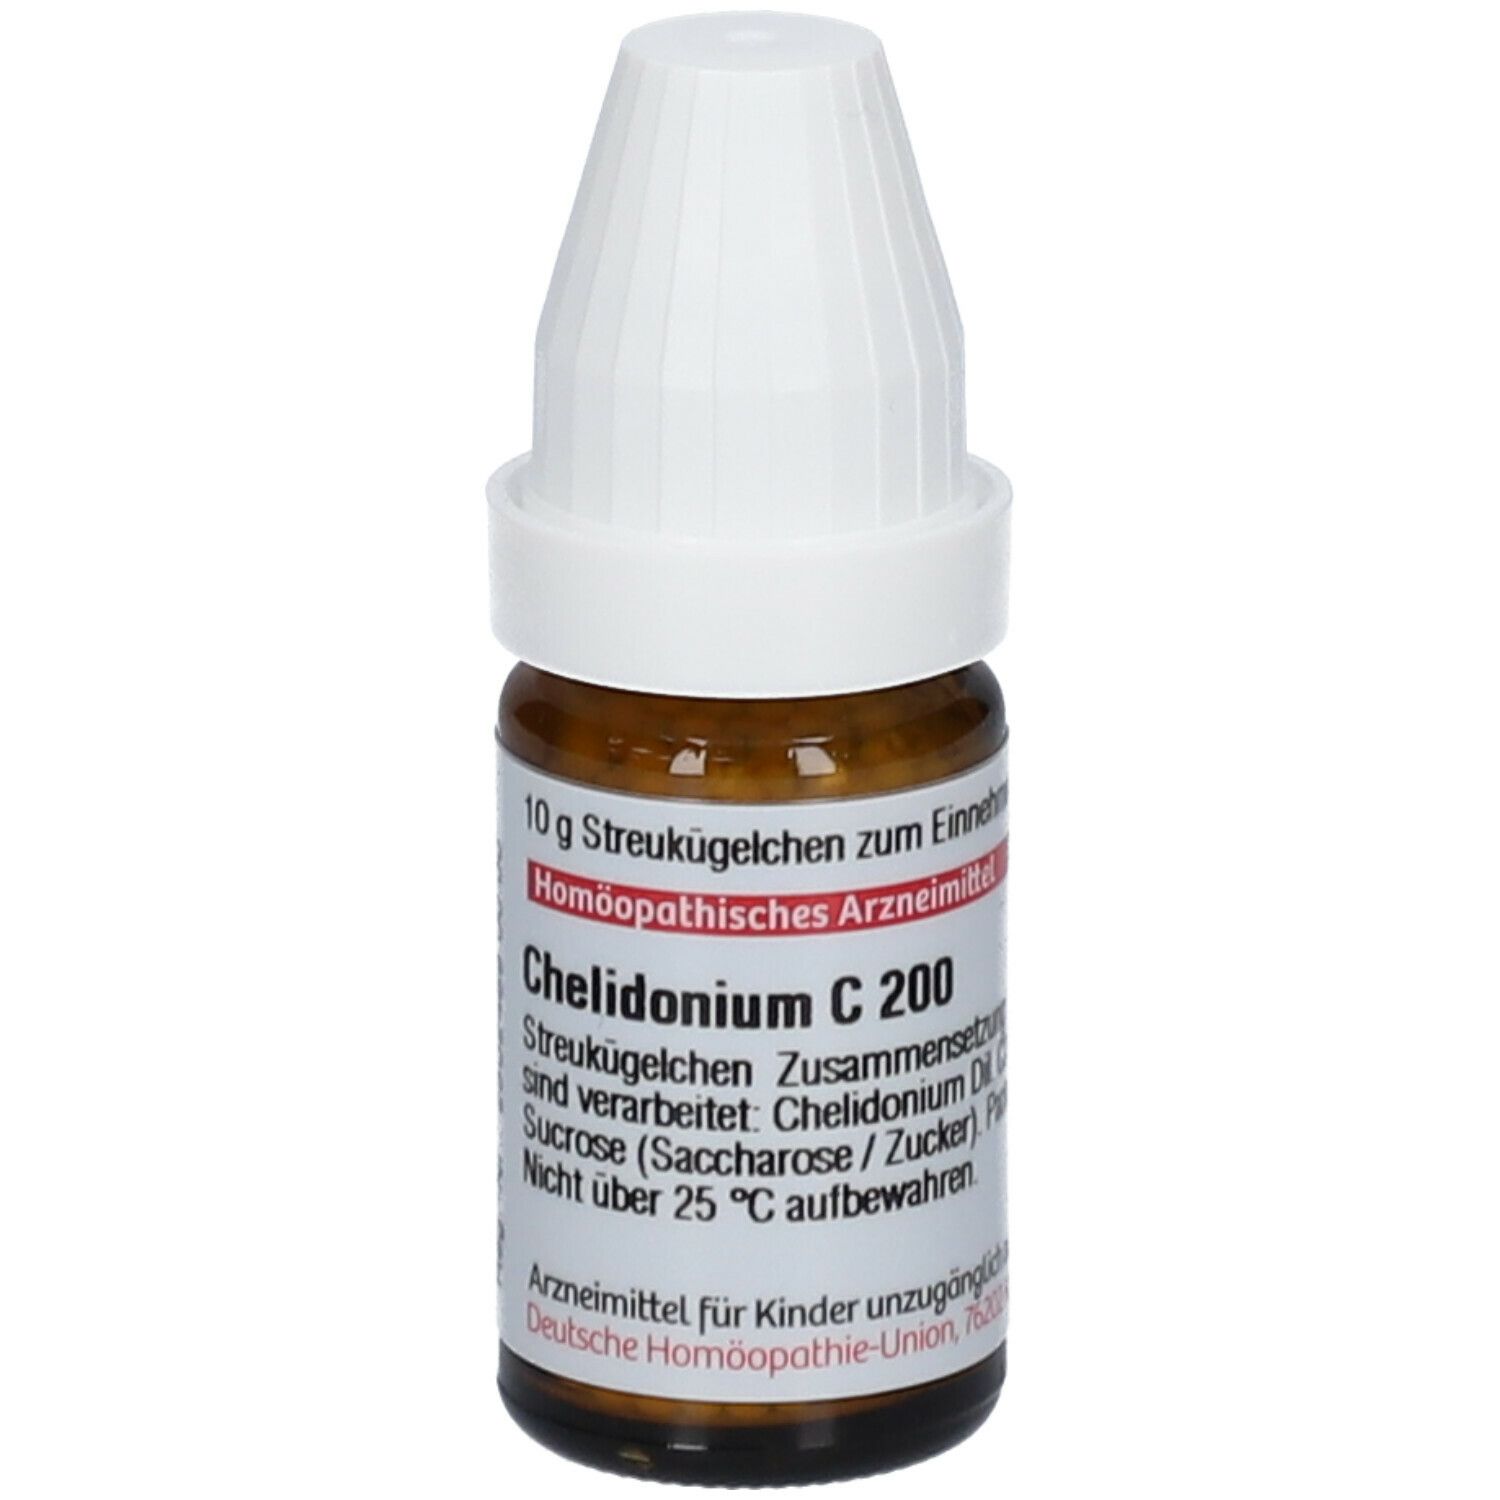 DHU Chelidonium C200